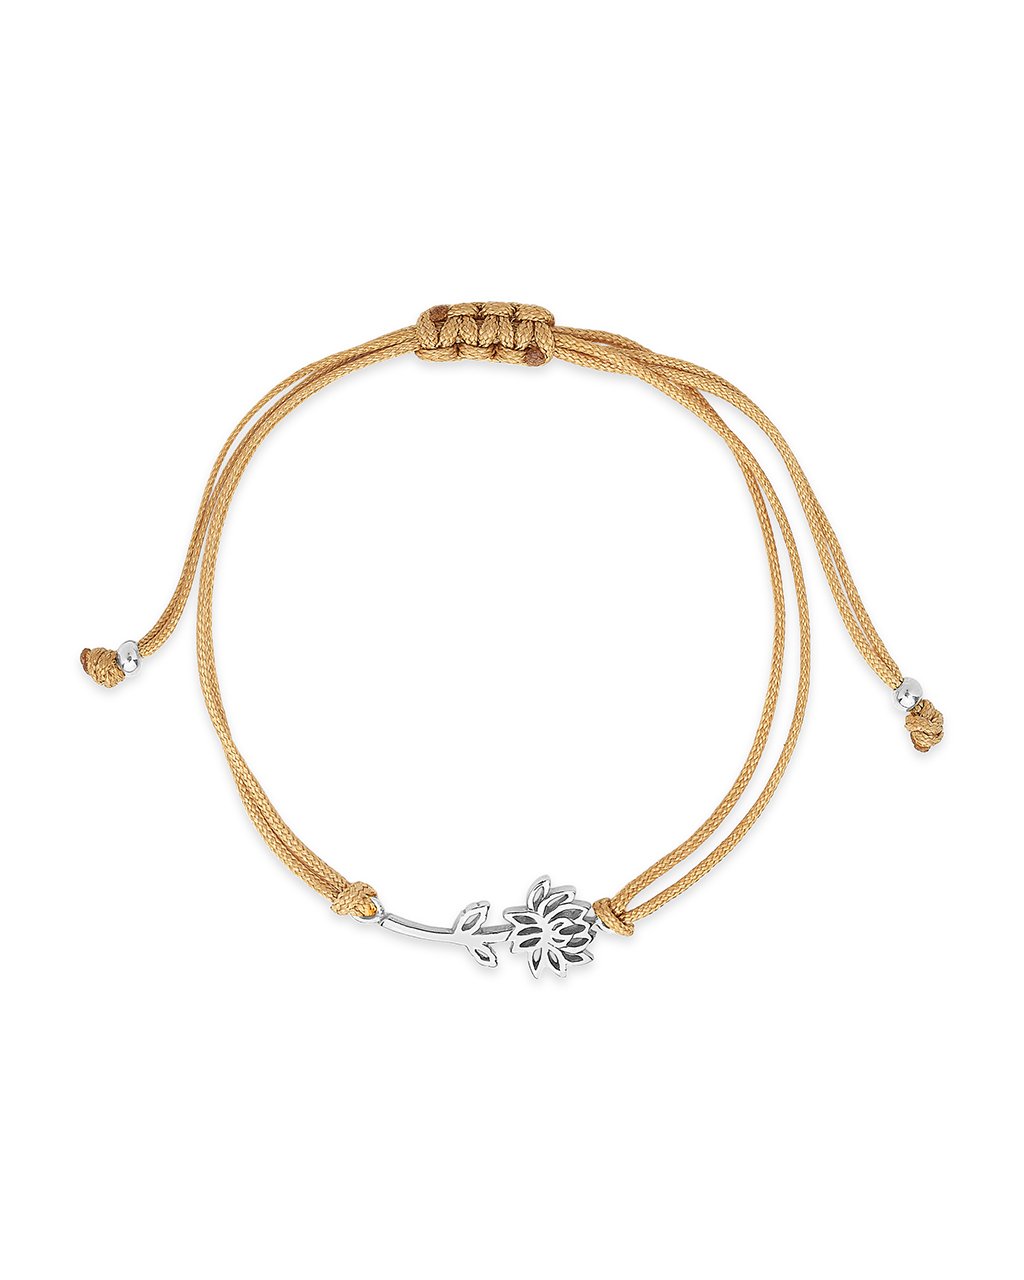 Silver Birth Flower Bracelet, Birth Flower Jewelry, Personalized